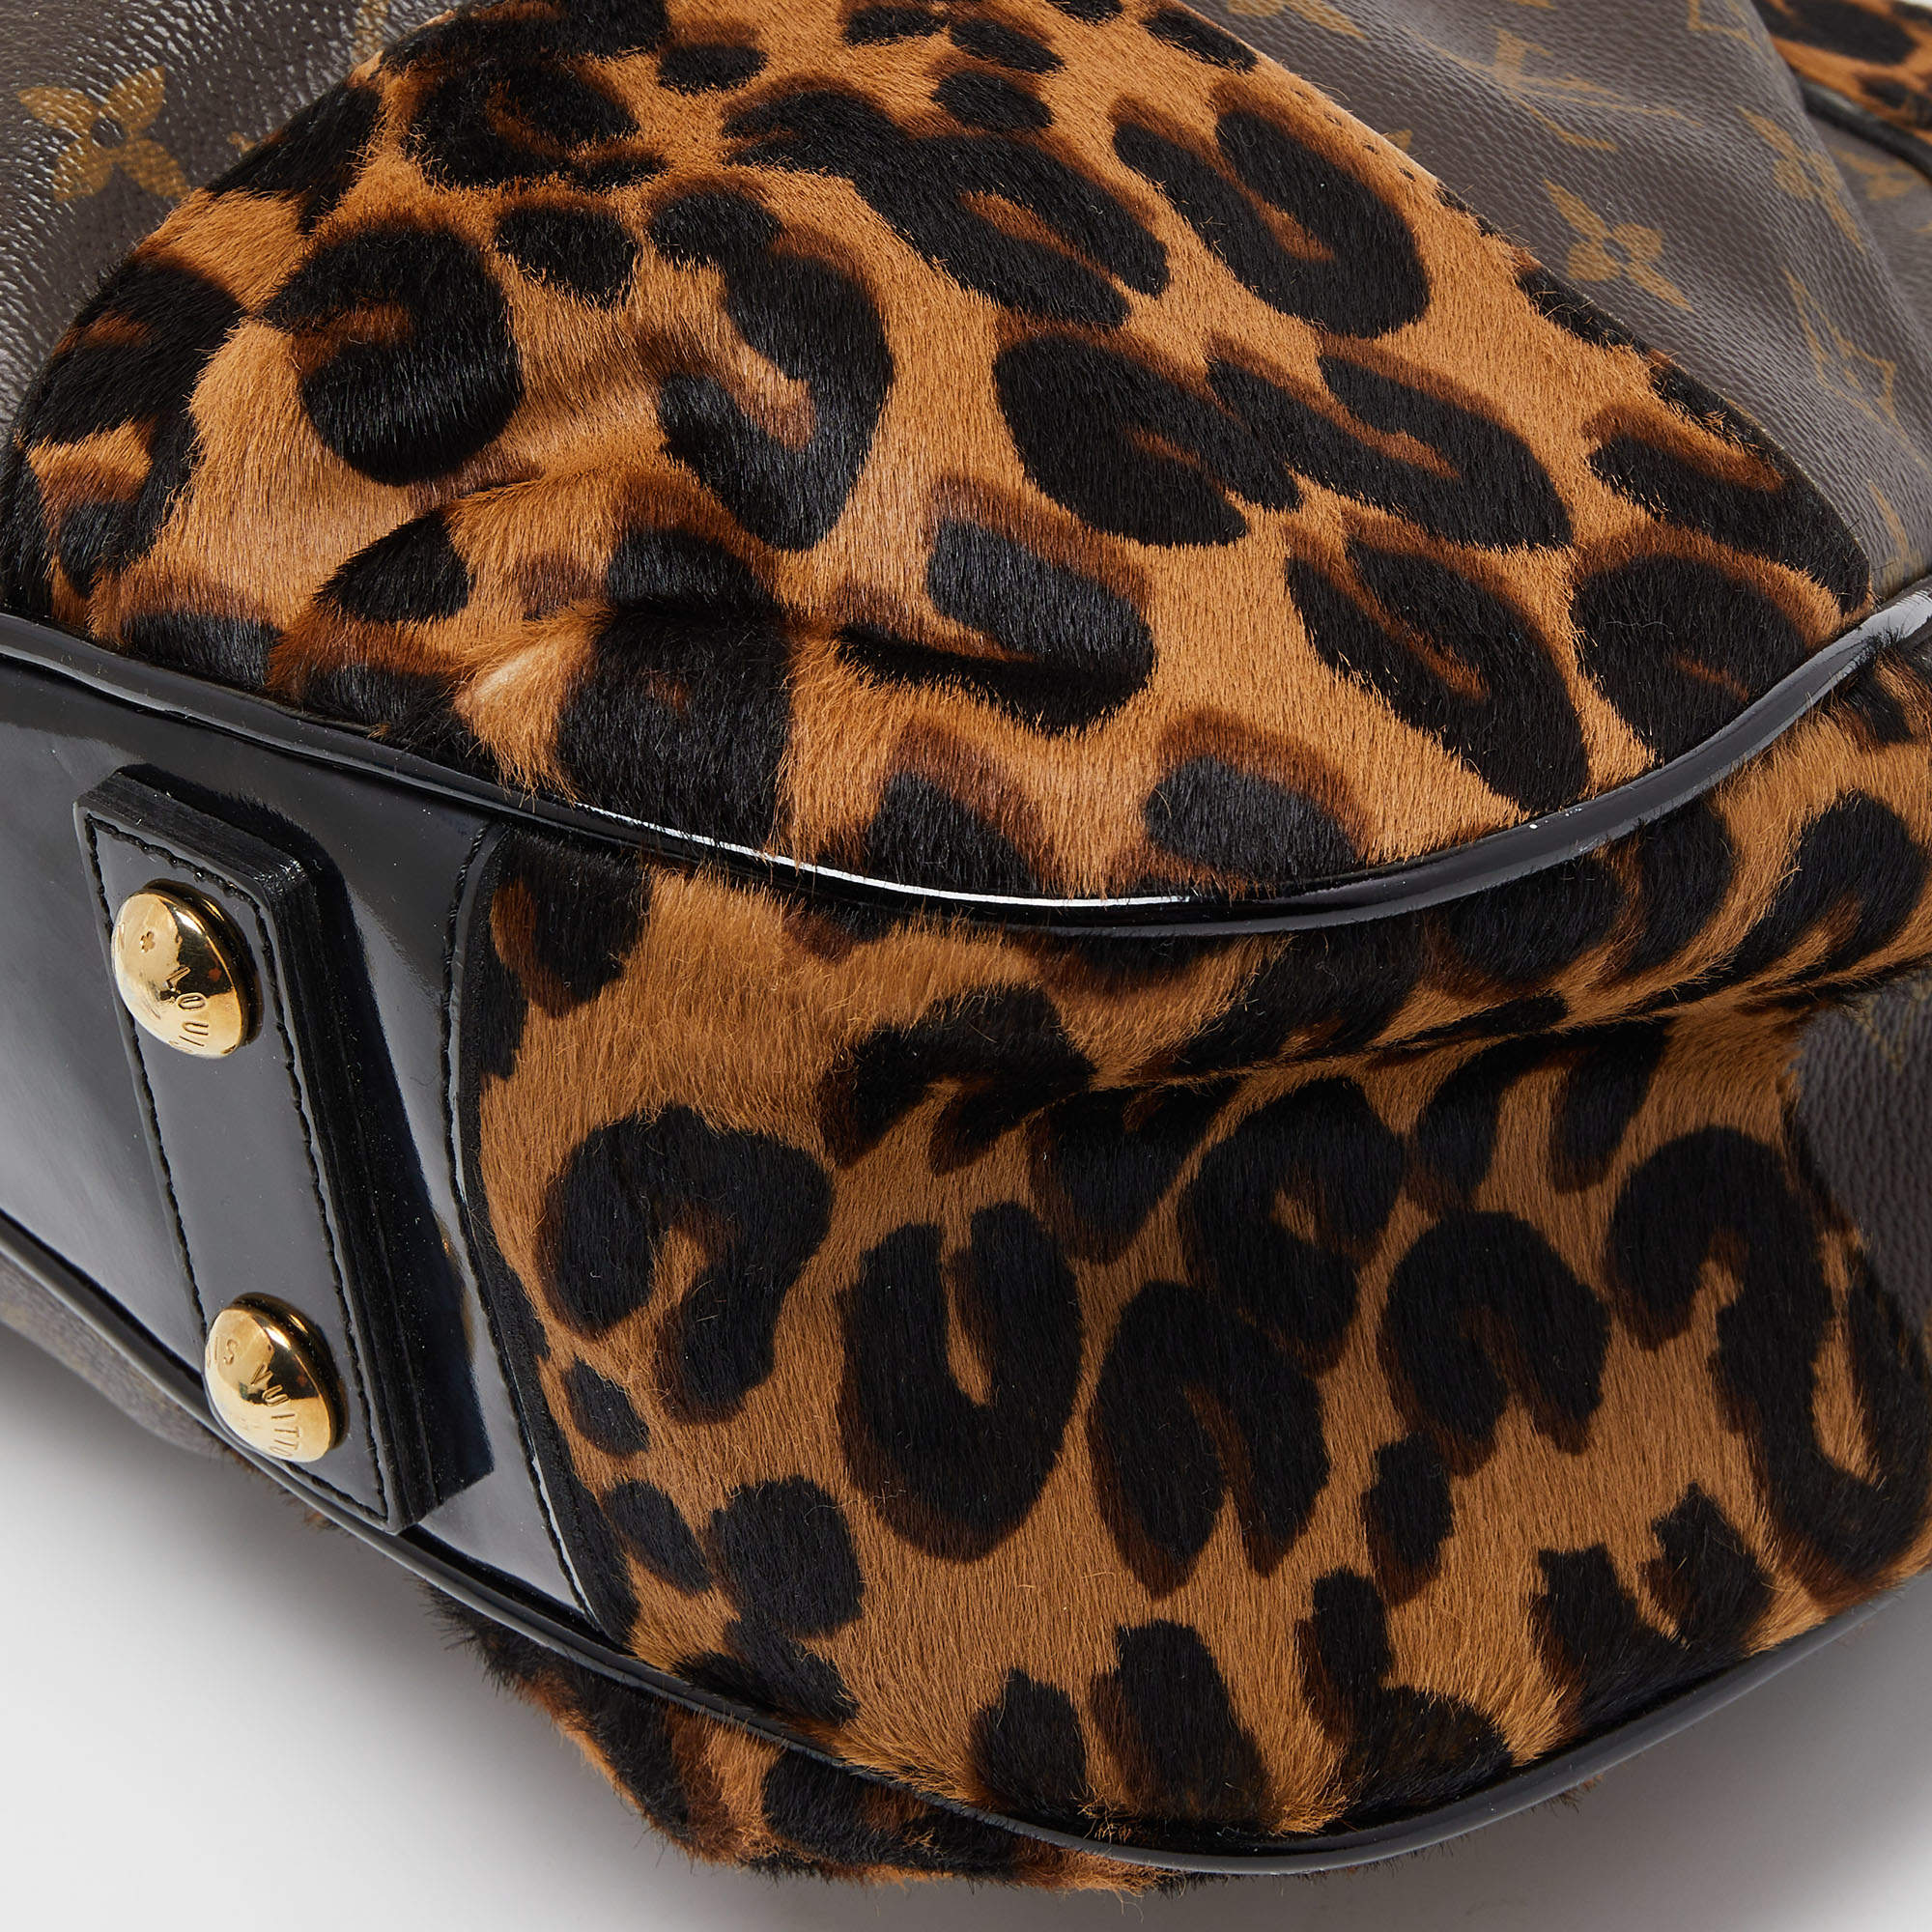 Louis Vuitton Monogram Canvas-Karung and Leopard Print Calfhair bag